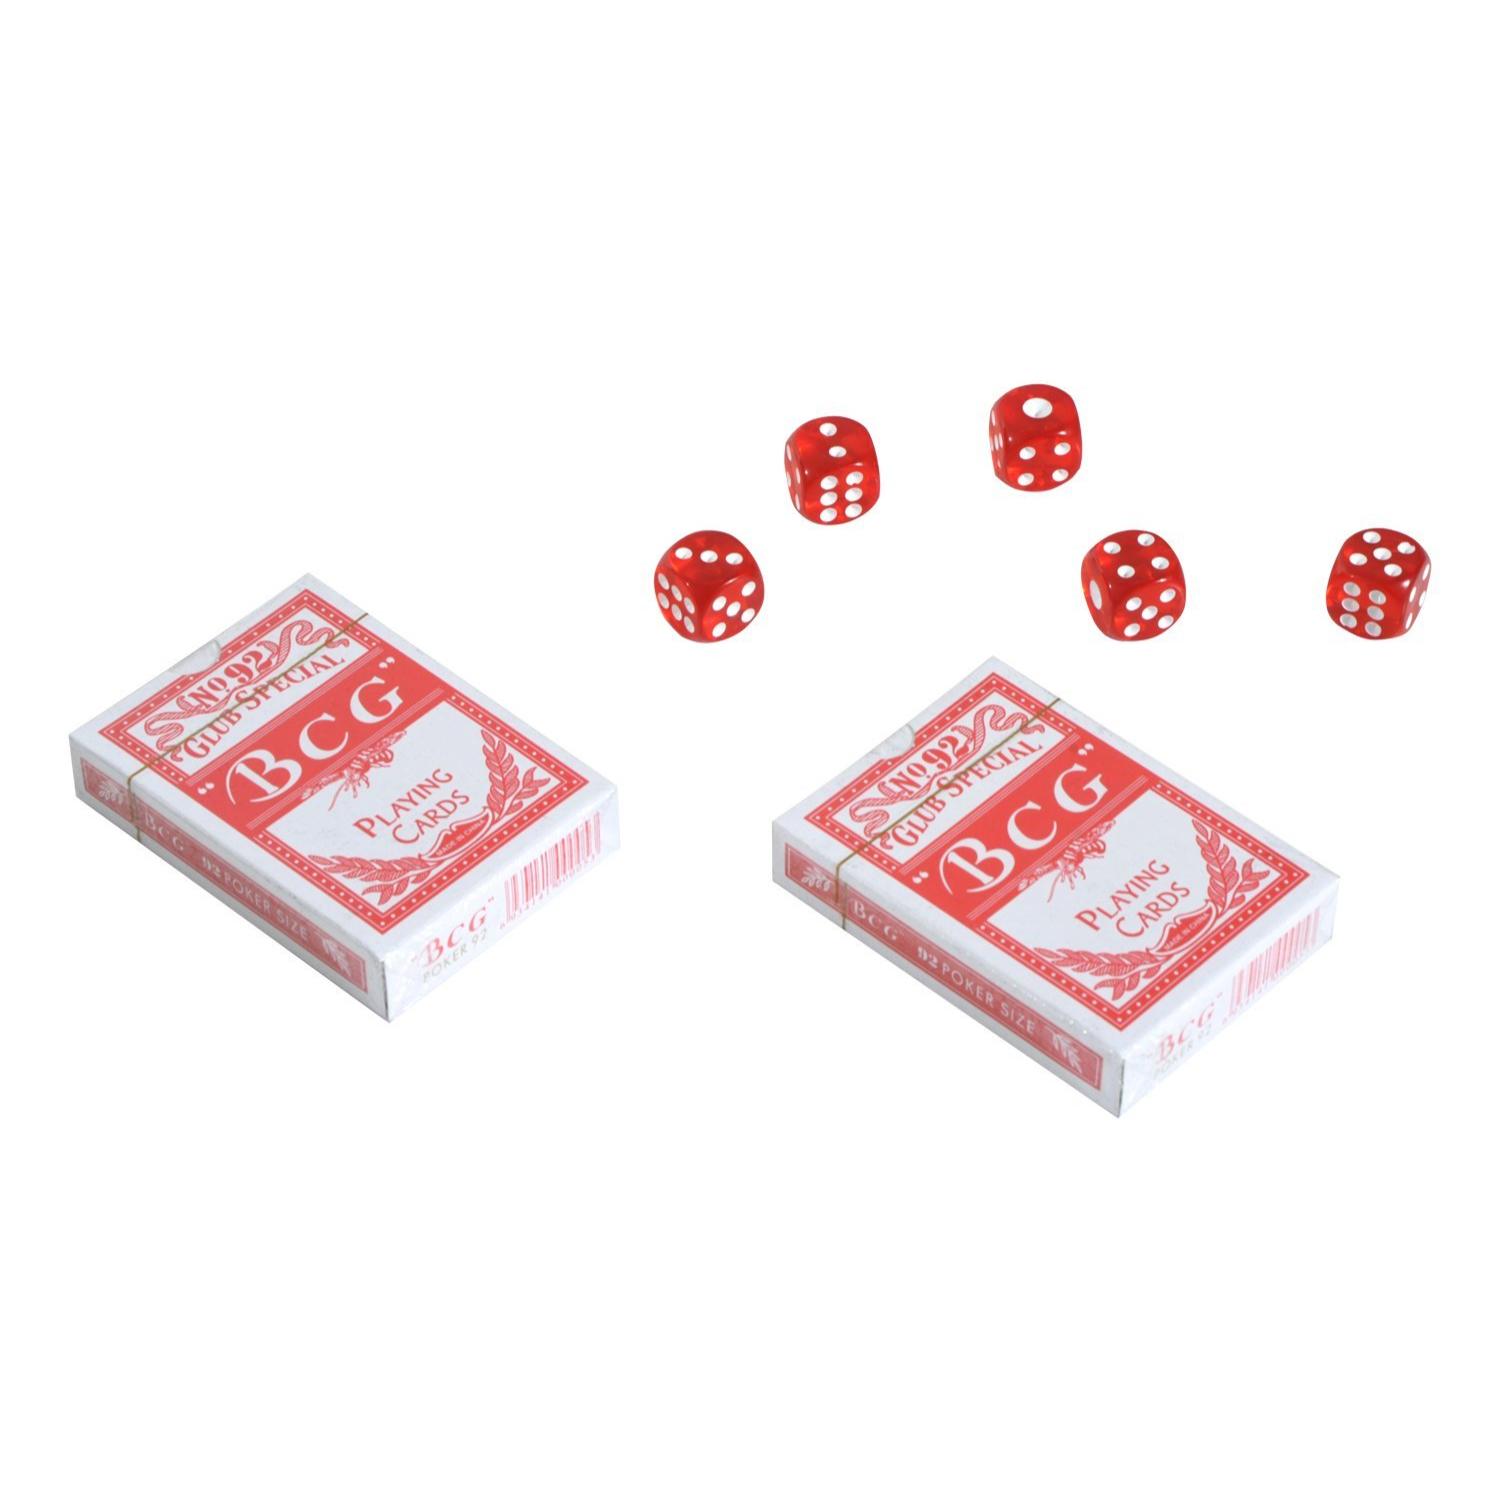 Maletín de Poker Profesional con 500 Fichas Juego Set de Poker Casino de Aluminio con 5 Dados 2 Barajas de Cartas y 1 Ficha de Crupier 55,5x22x6,5 cm Multicolor